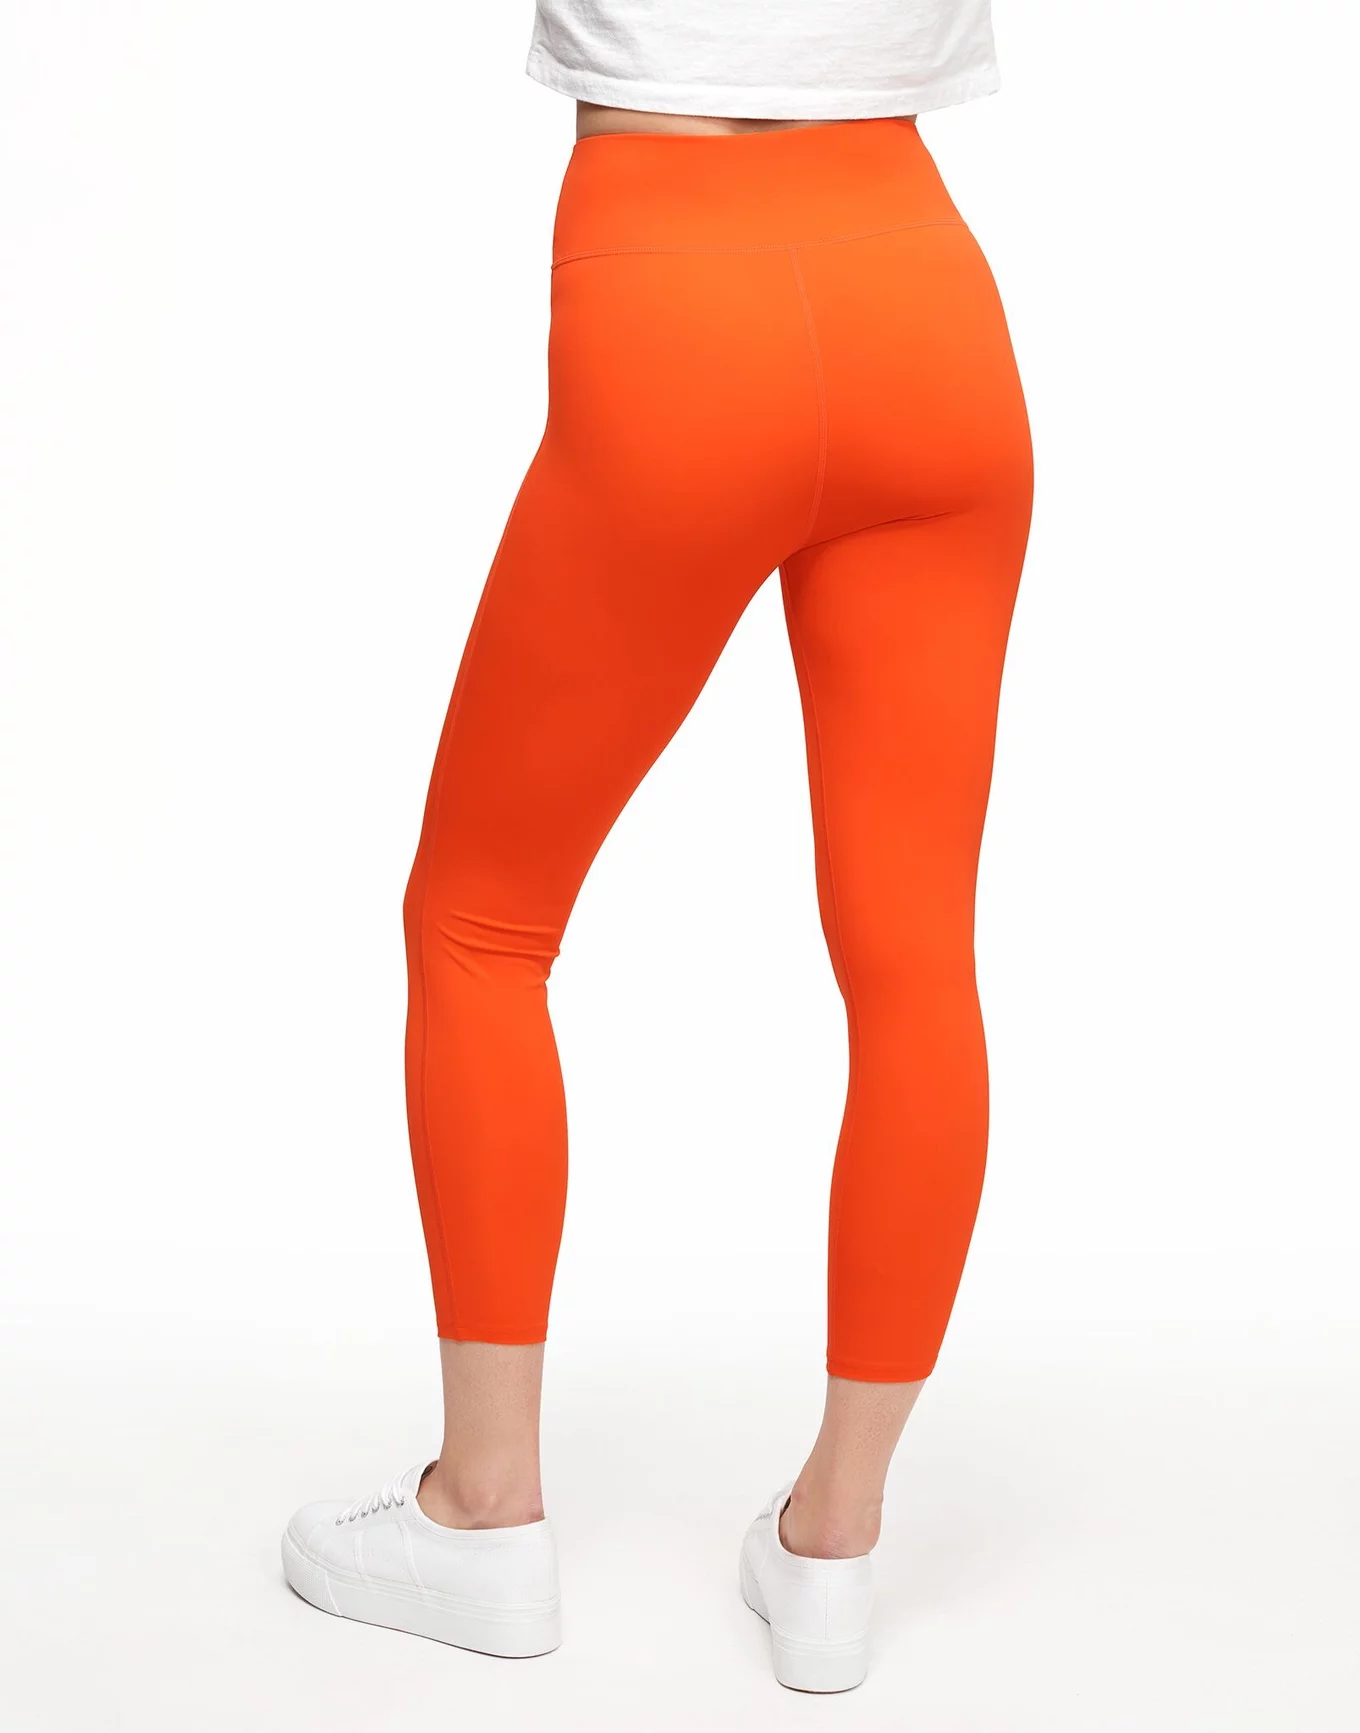 CALIA Women's LustraLux 7/8 Legging, Small, Sunrise Orange - Holiday Gift -  Yahoo Shopping